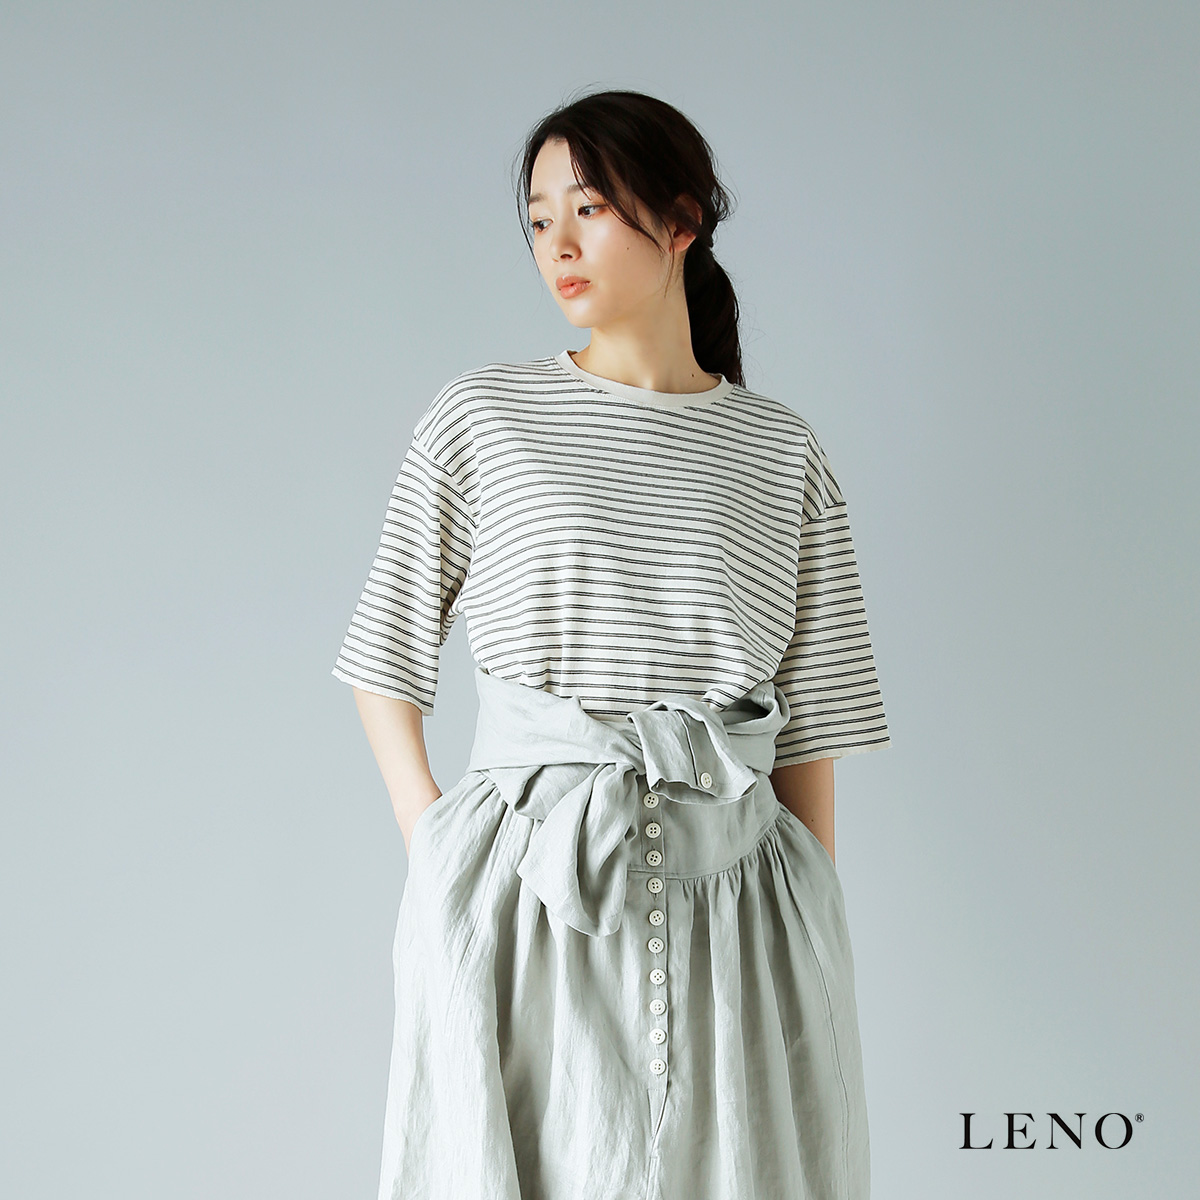 LENO(リノ)オリジナルコットンフライス ハーフスリーブボーダーTシャツ h2201-cs007